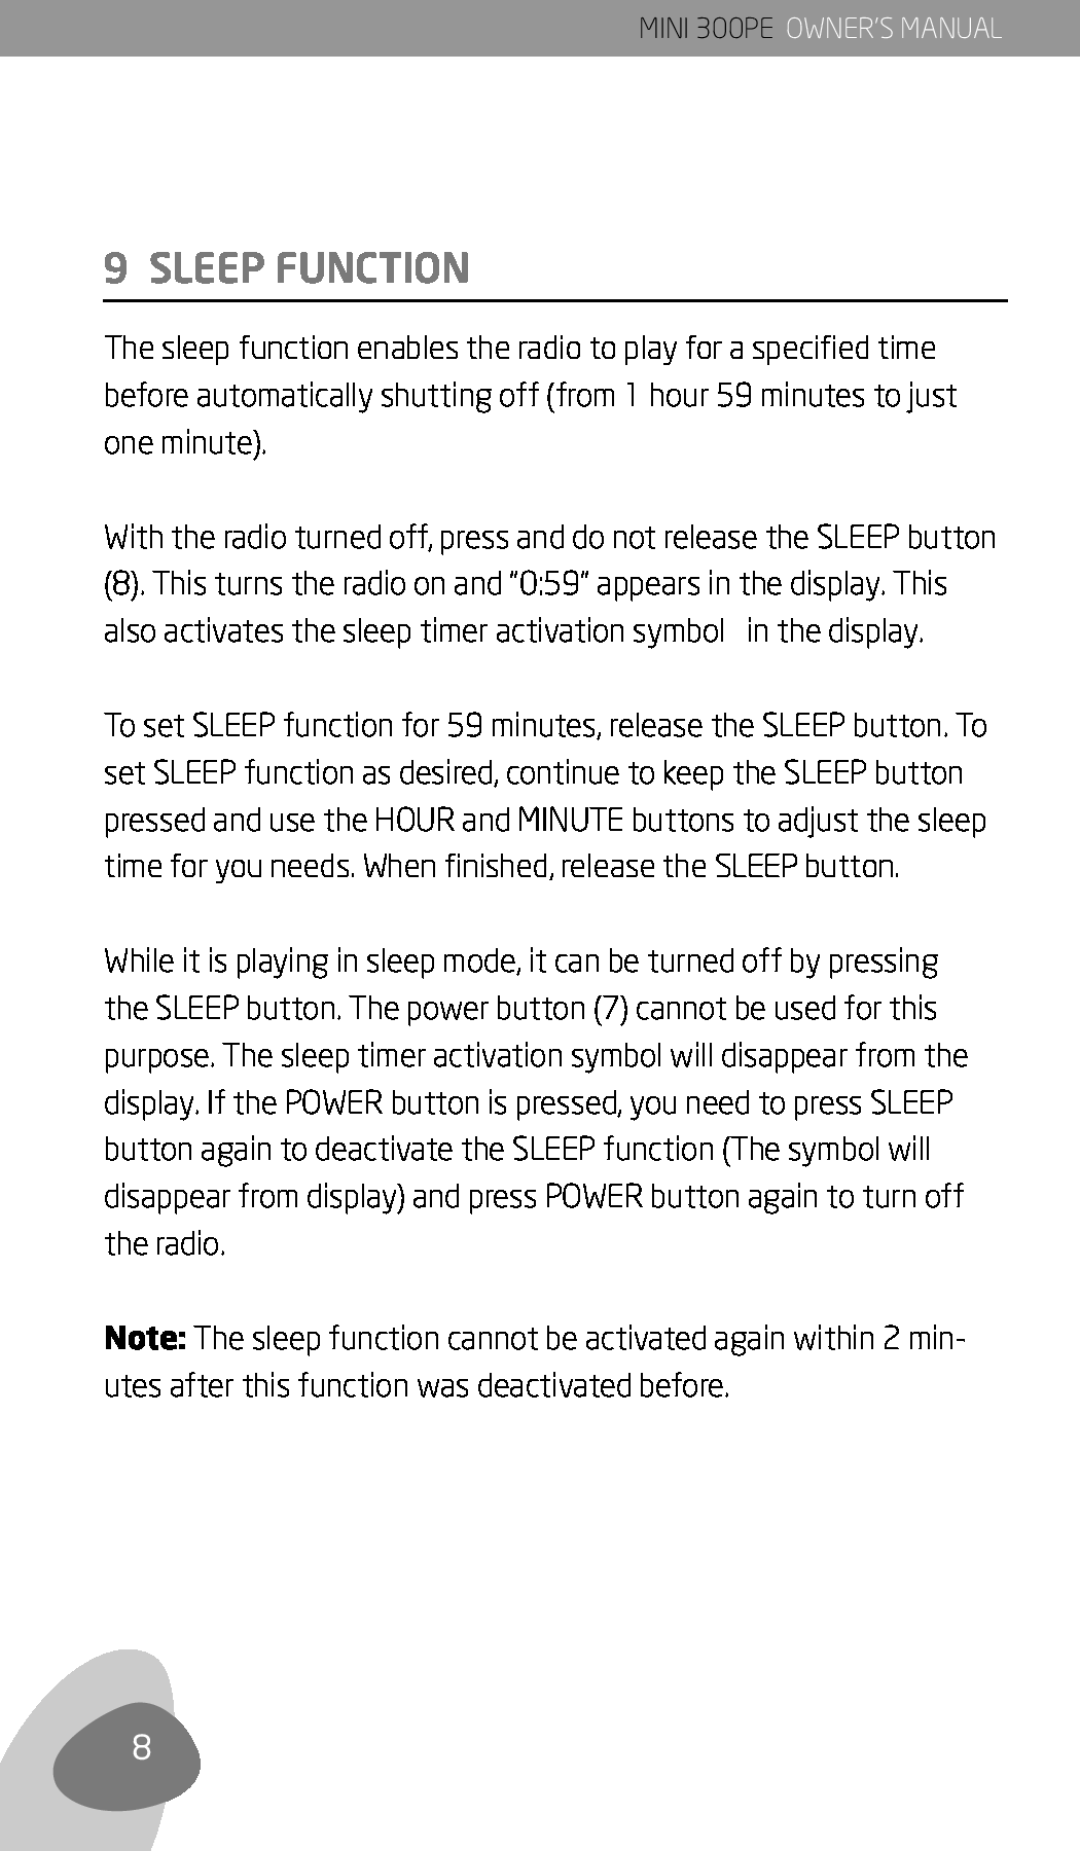 Eton 300PE owner manual Sleep Function 